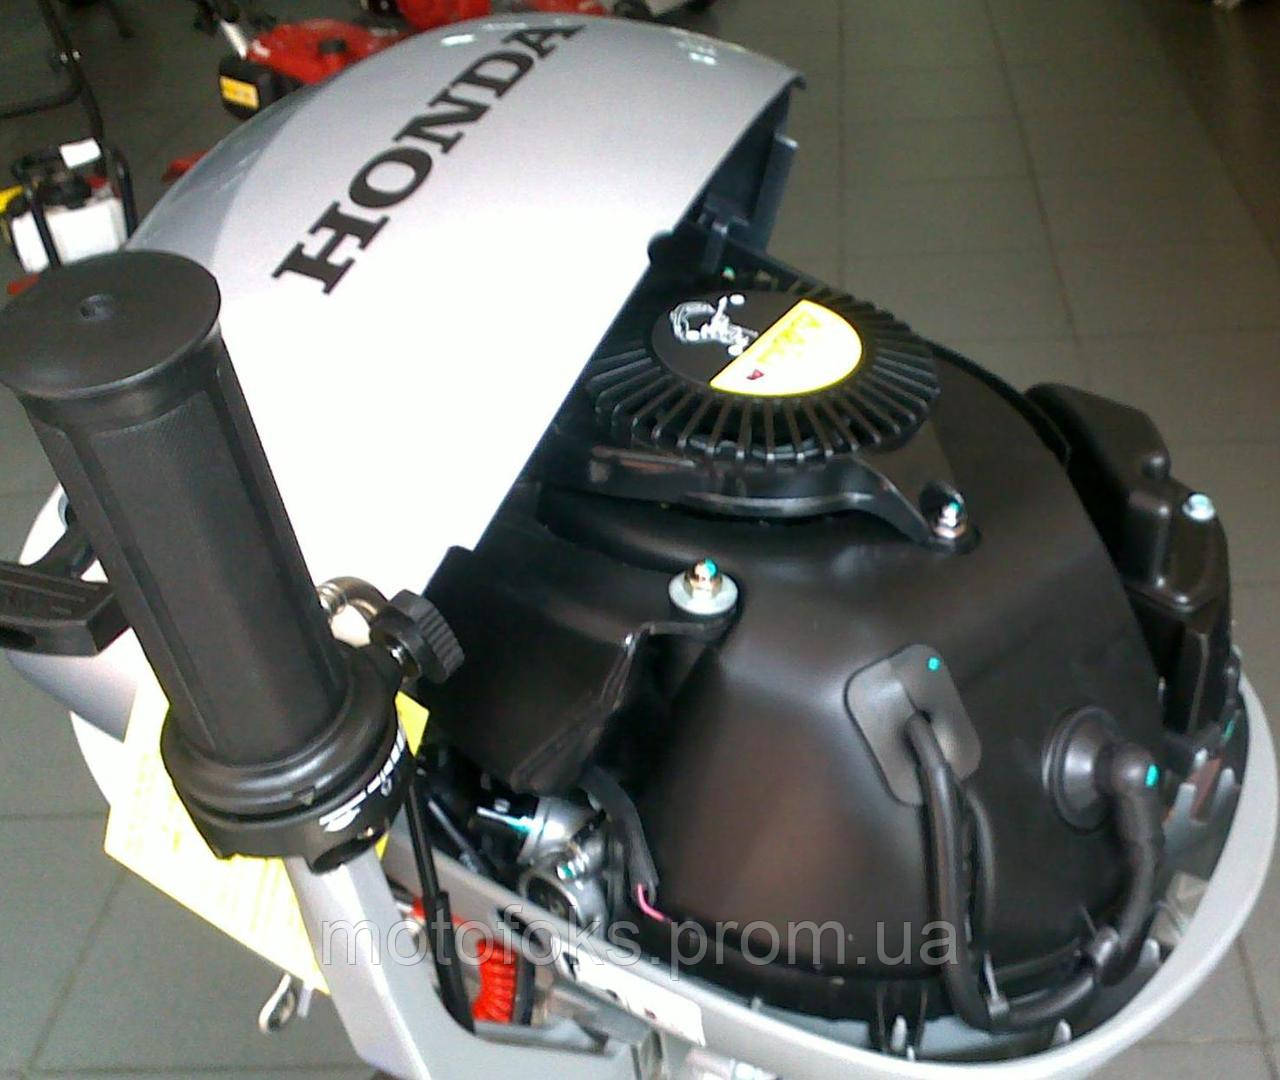 Лодочные моторы Honda (Хонда) купить в интернет-магазине в Москве – ТехноДача